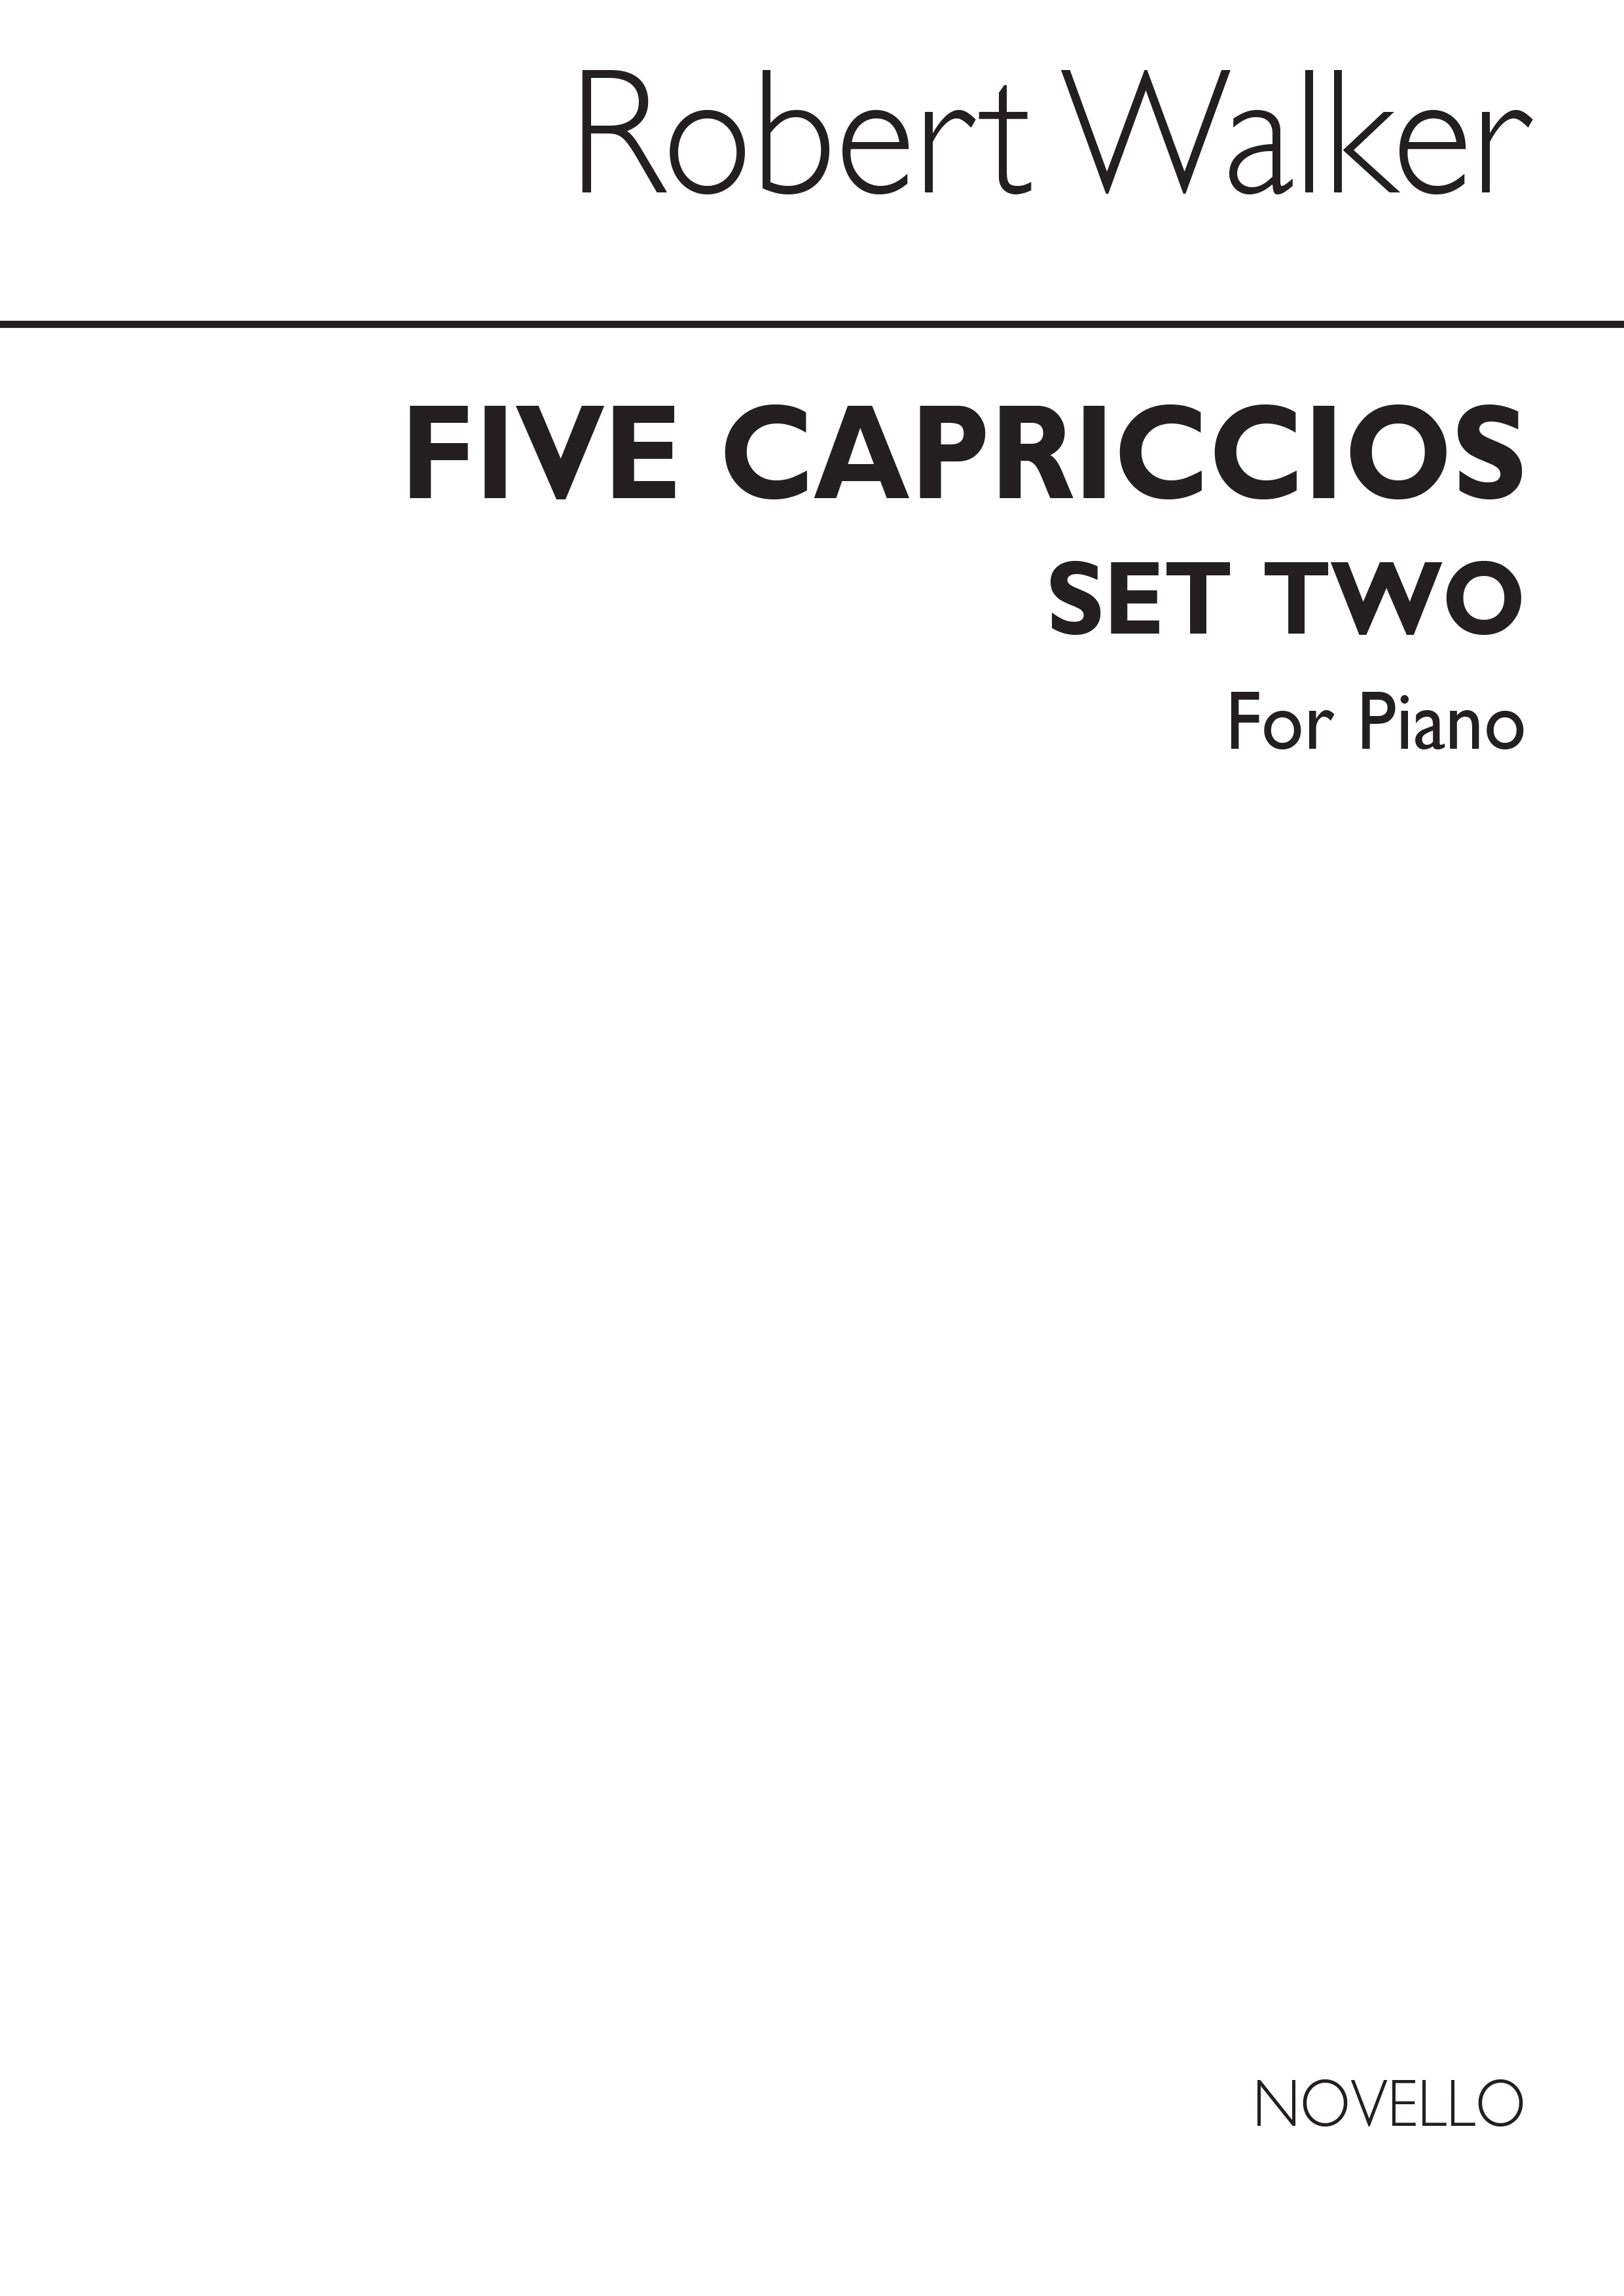 Robert Walker: Five Capriccios For Piano Set 2